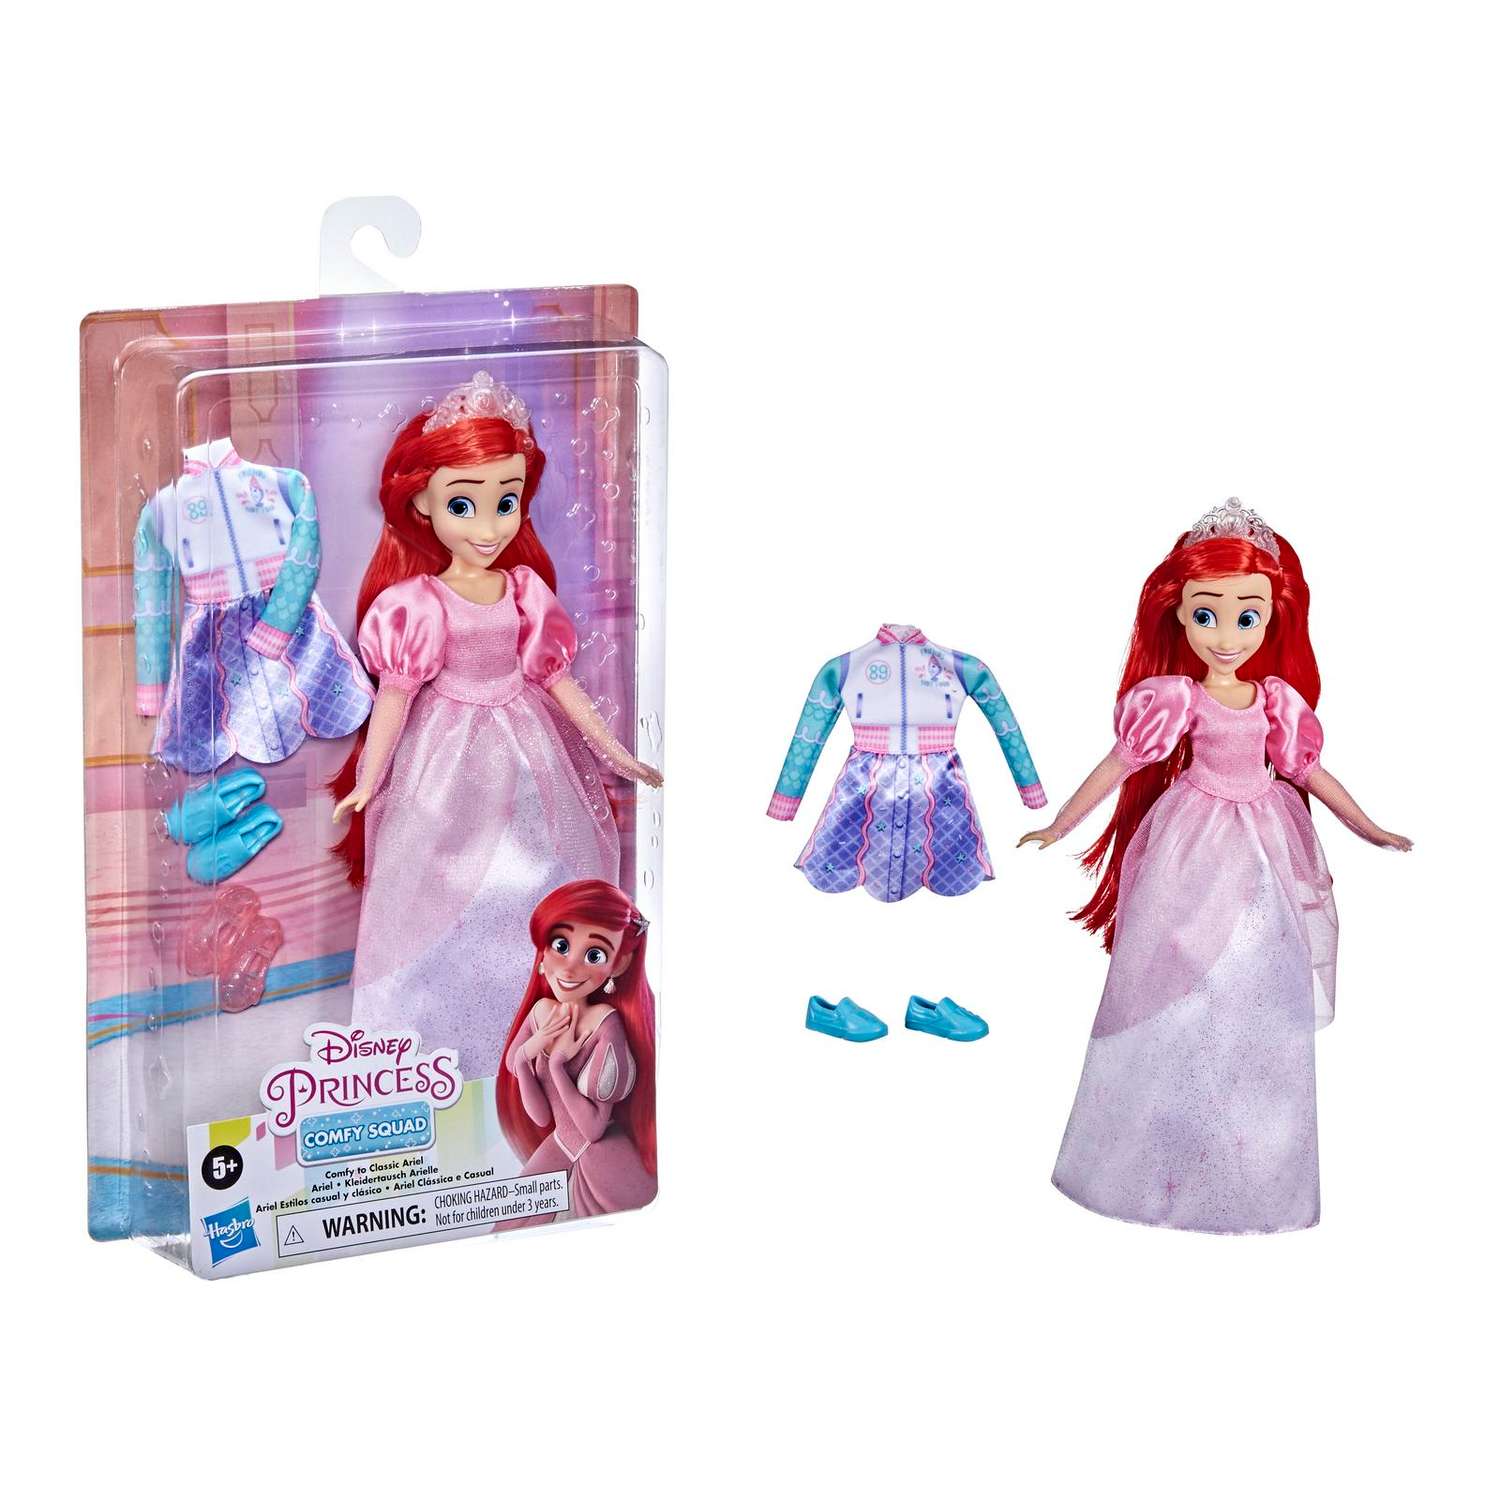 Кукла Disney Princess Disney Princess Hasbro Комфи Ариэль 2наряда F23665X0 F23665X0 - фото 12